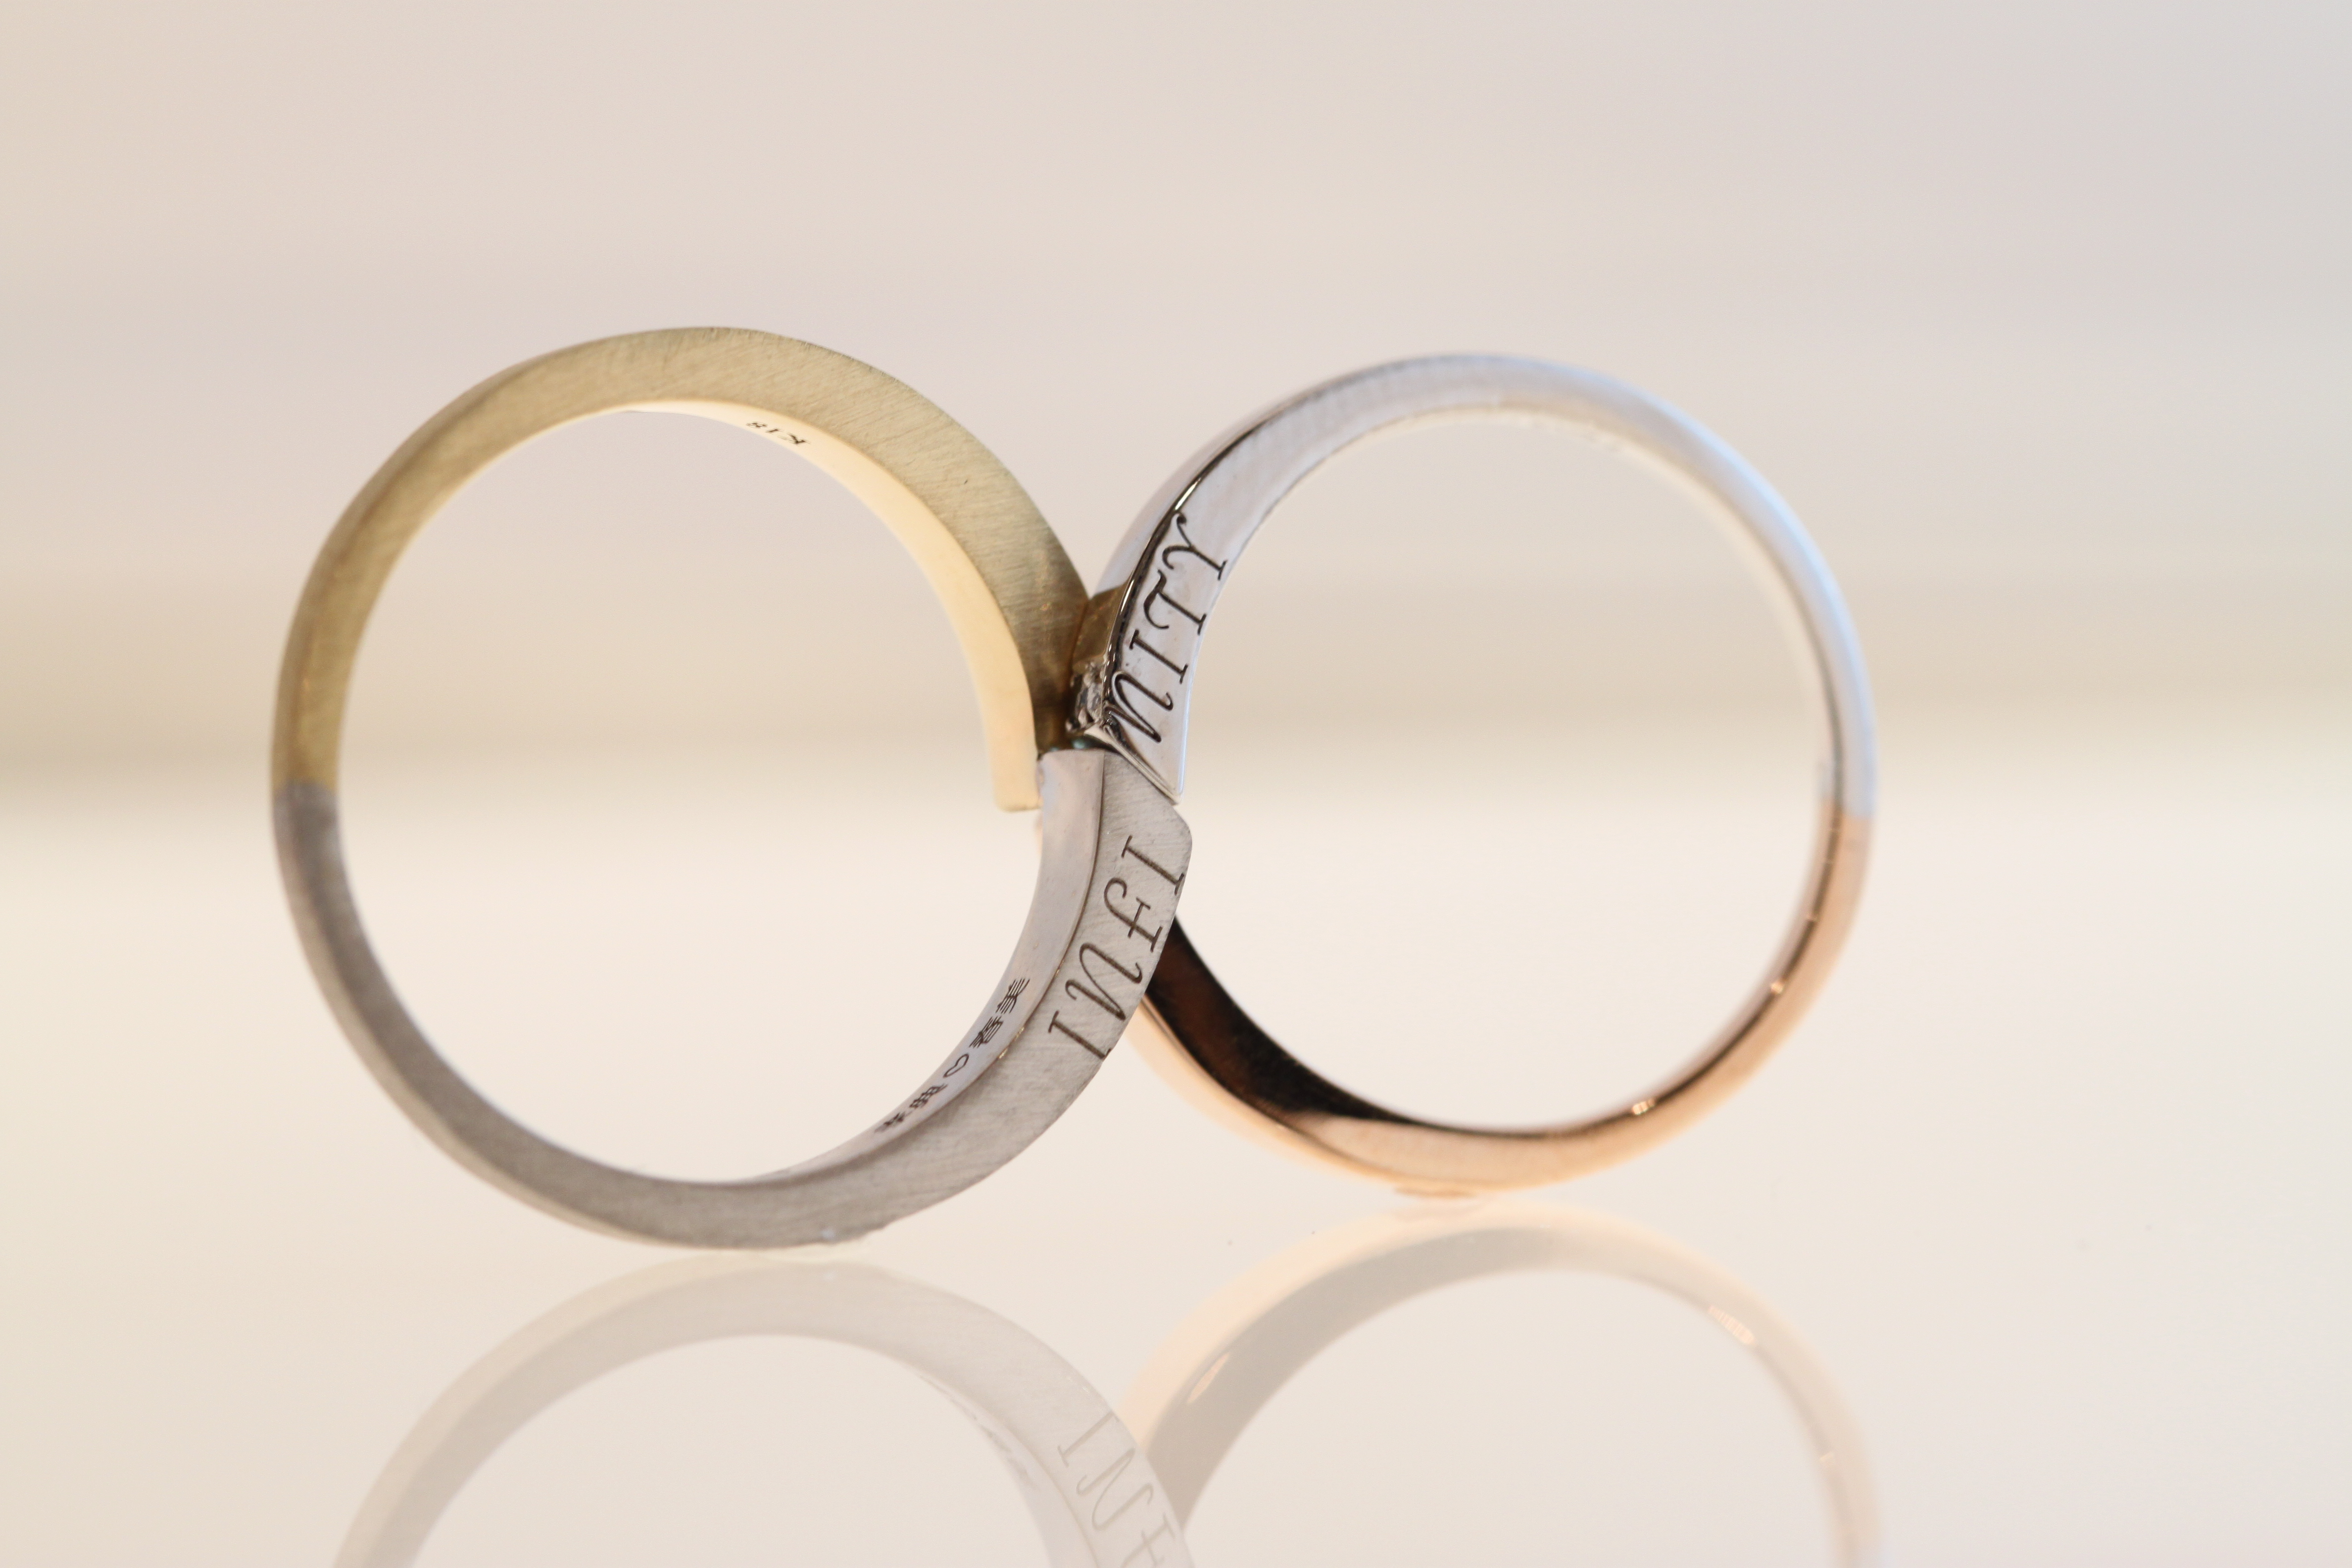 手作り結婚指輪の料金 料金は税込価格です 関西 神戸 大阪で結婚指輪 婚約指輪 遺骨リング 遺骨ペンダントを手作りとオーダーメイドが出来るアトリエ